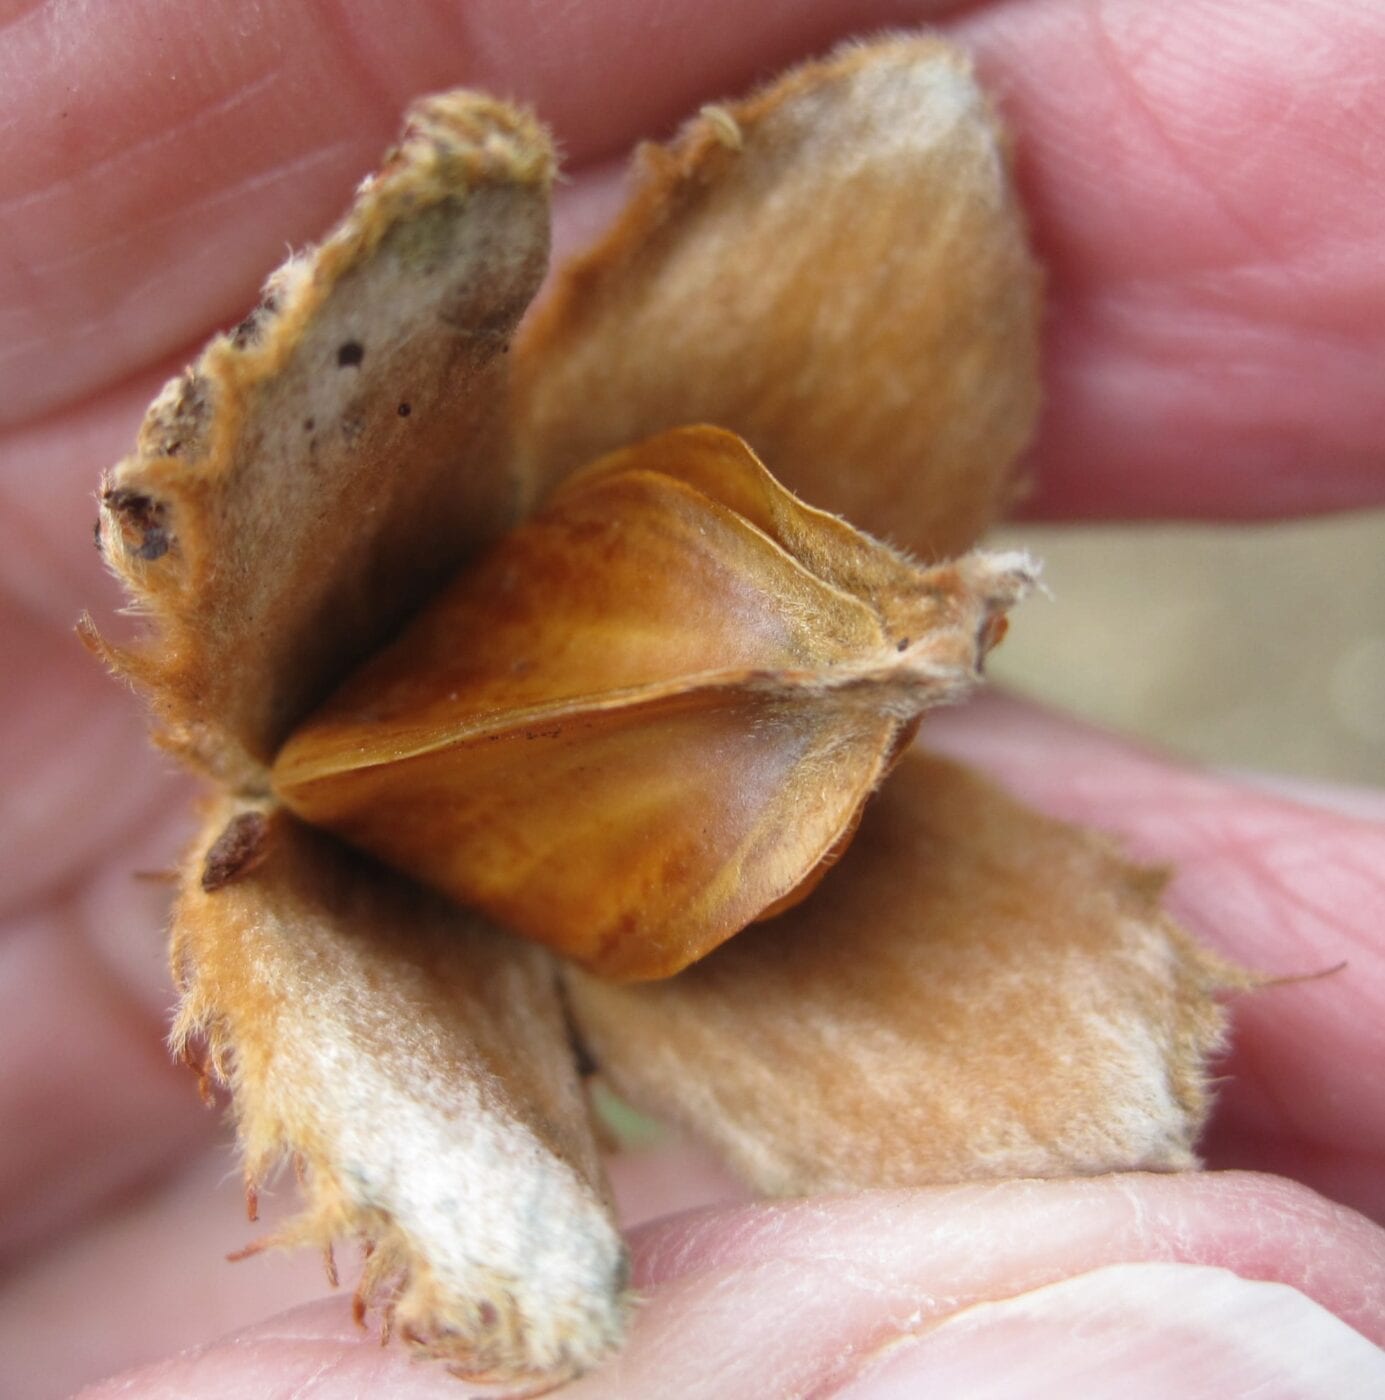 beech tree nuts